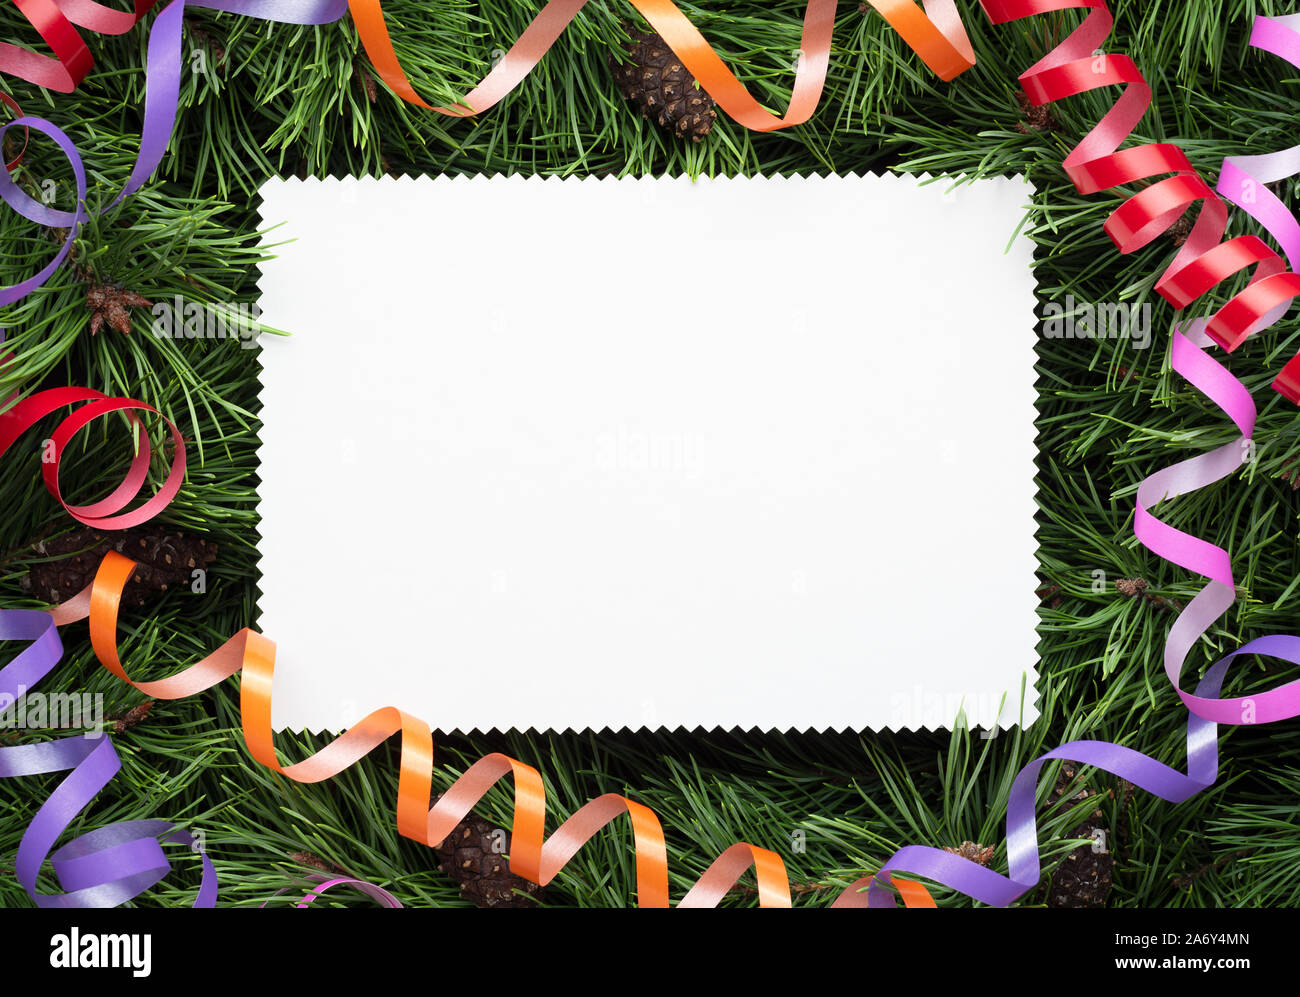 Bastidor de navidad decorado con ramas de pino y una hoja de papel blanco. Espacio para copia de felicitación para las vacaciones, o publicidad de texto Foto de stock